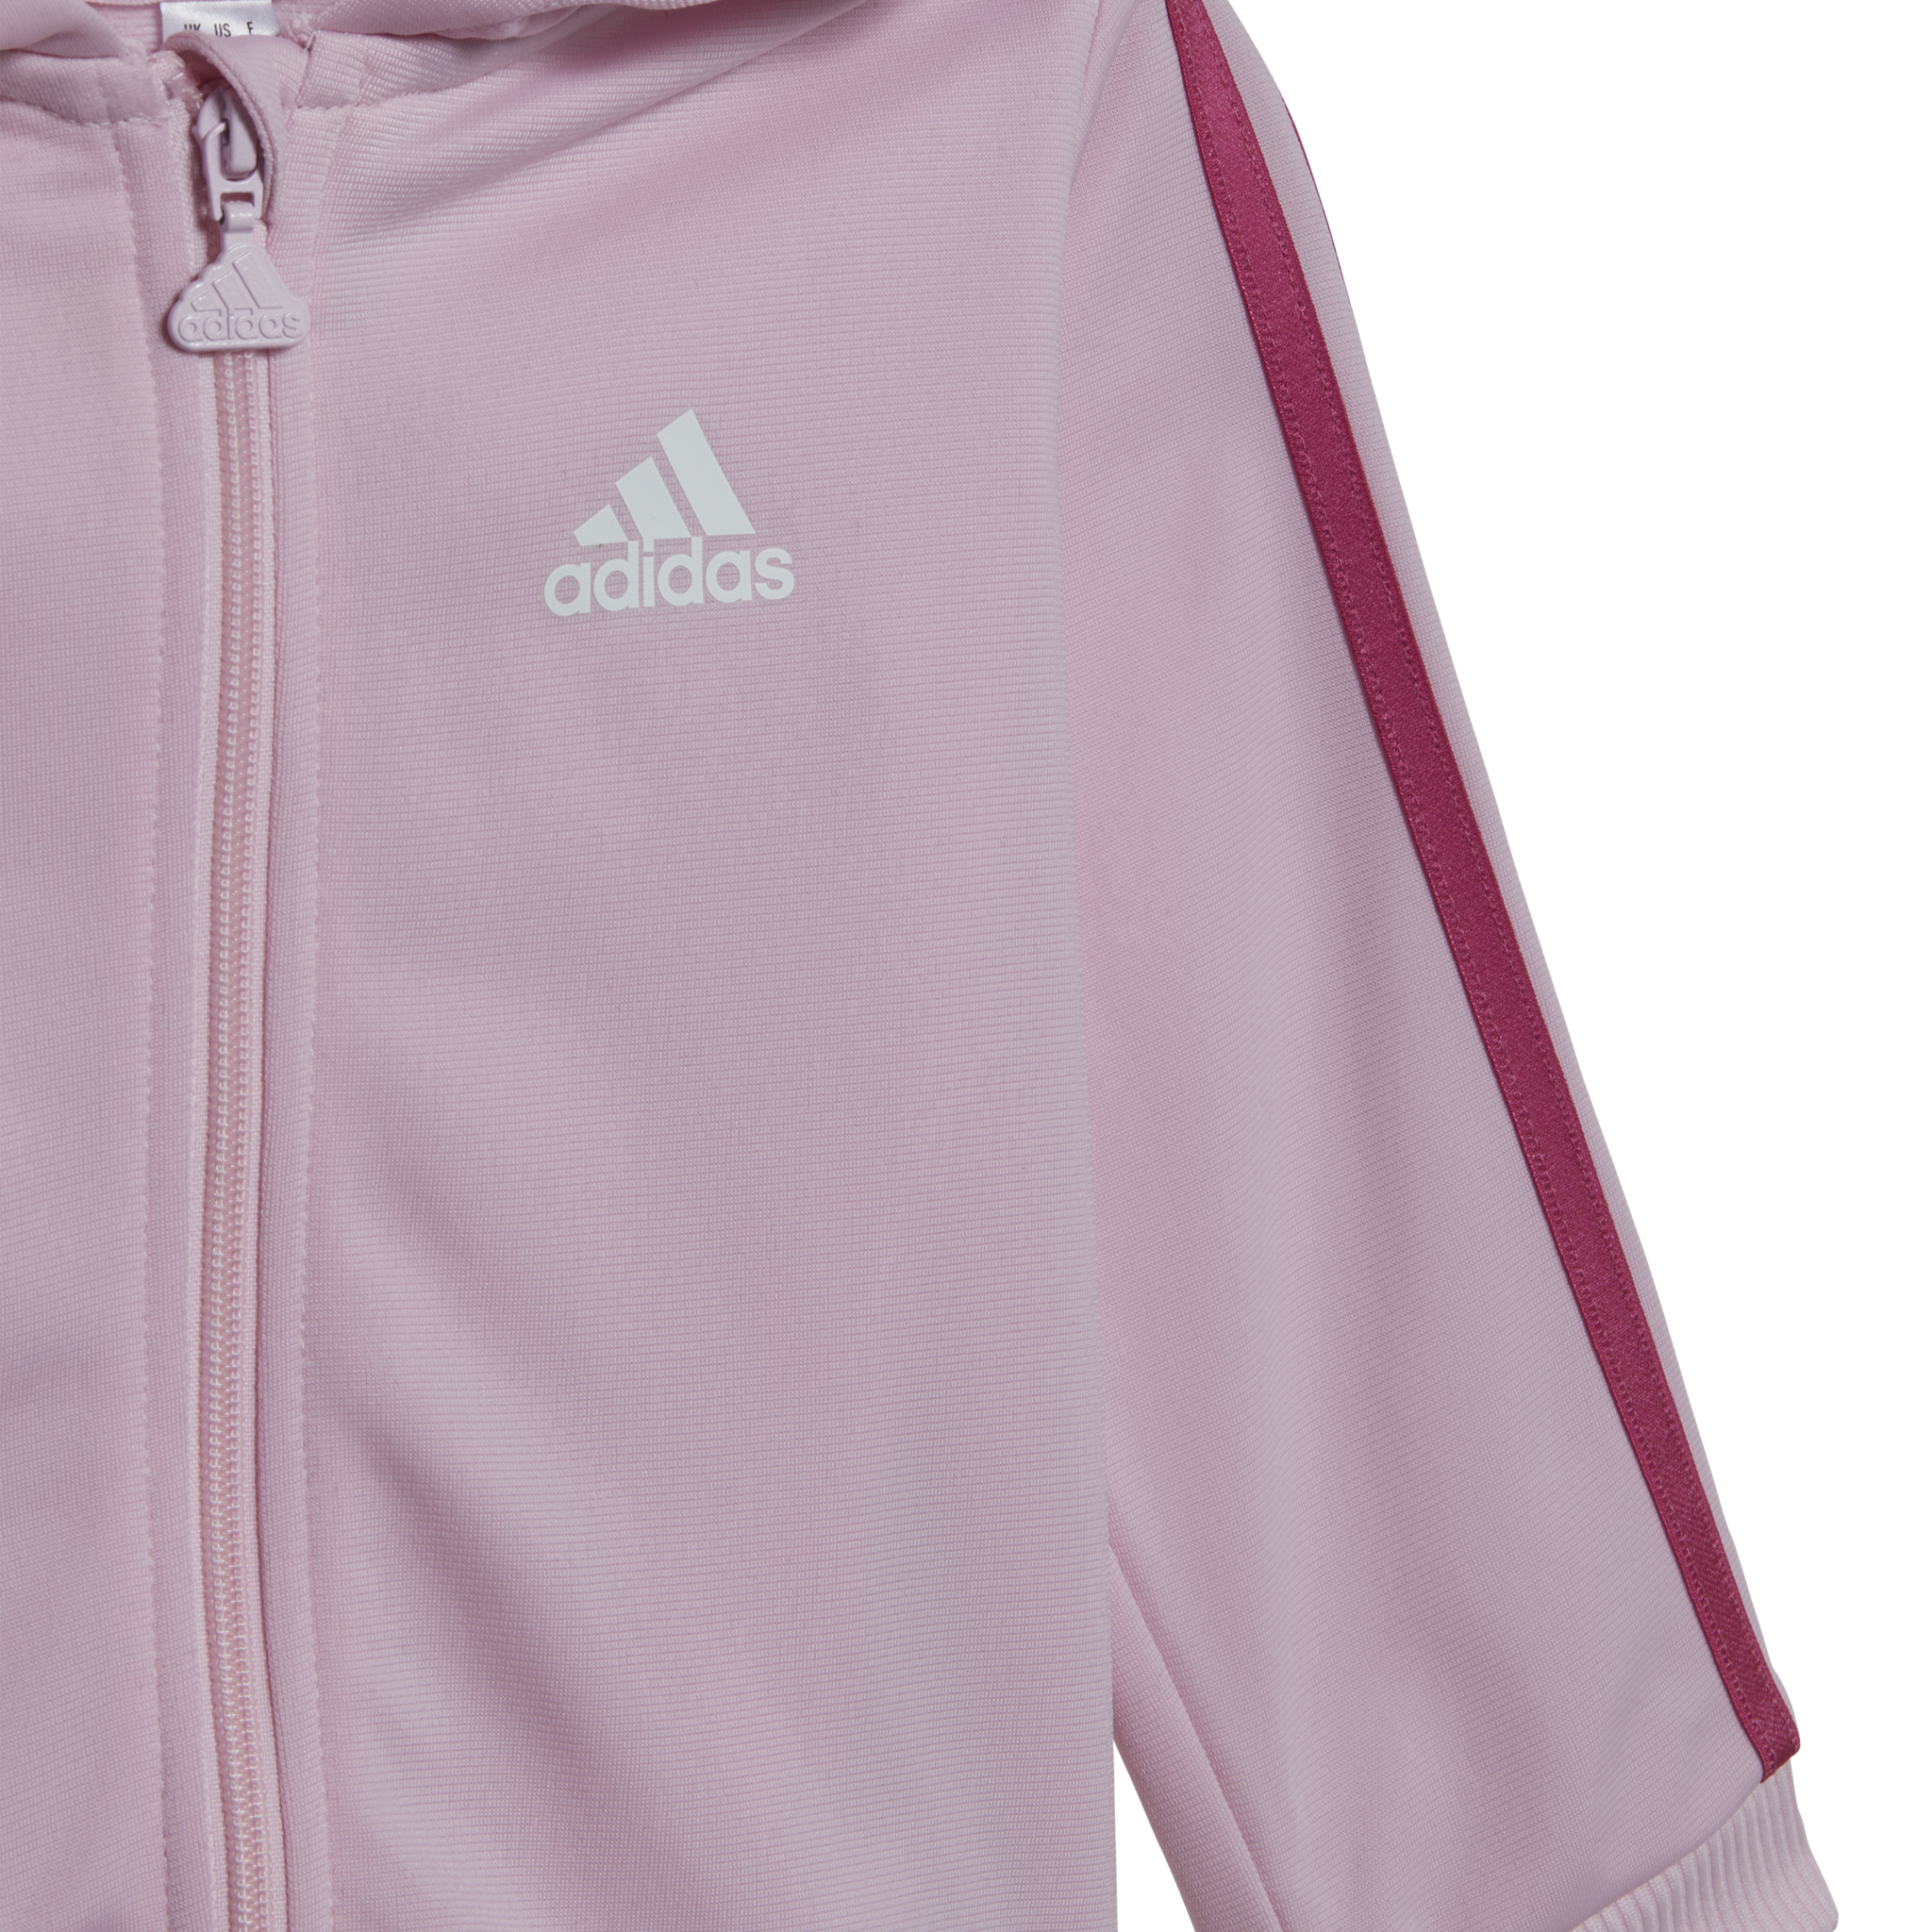 Adidas Trainingspak 3S Shiny Roze Kinder-2